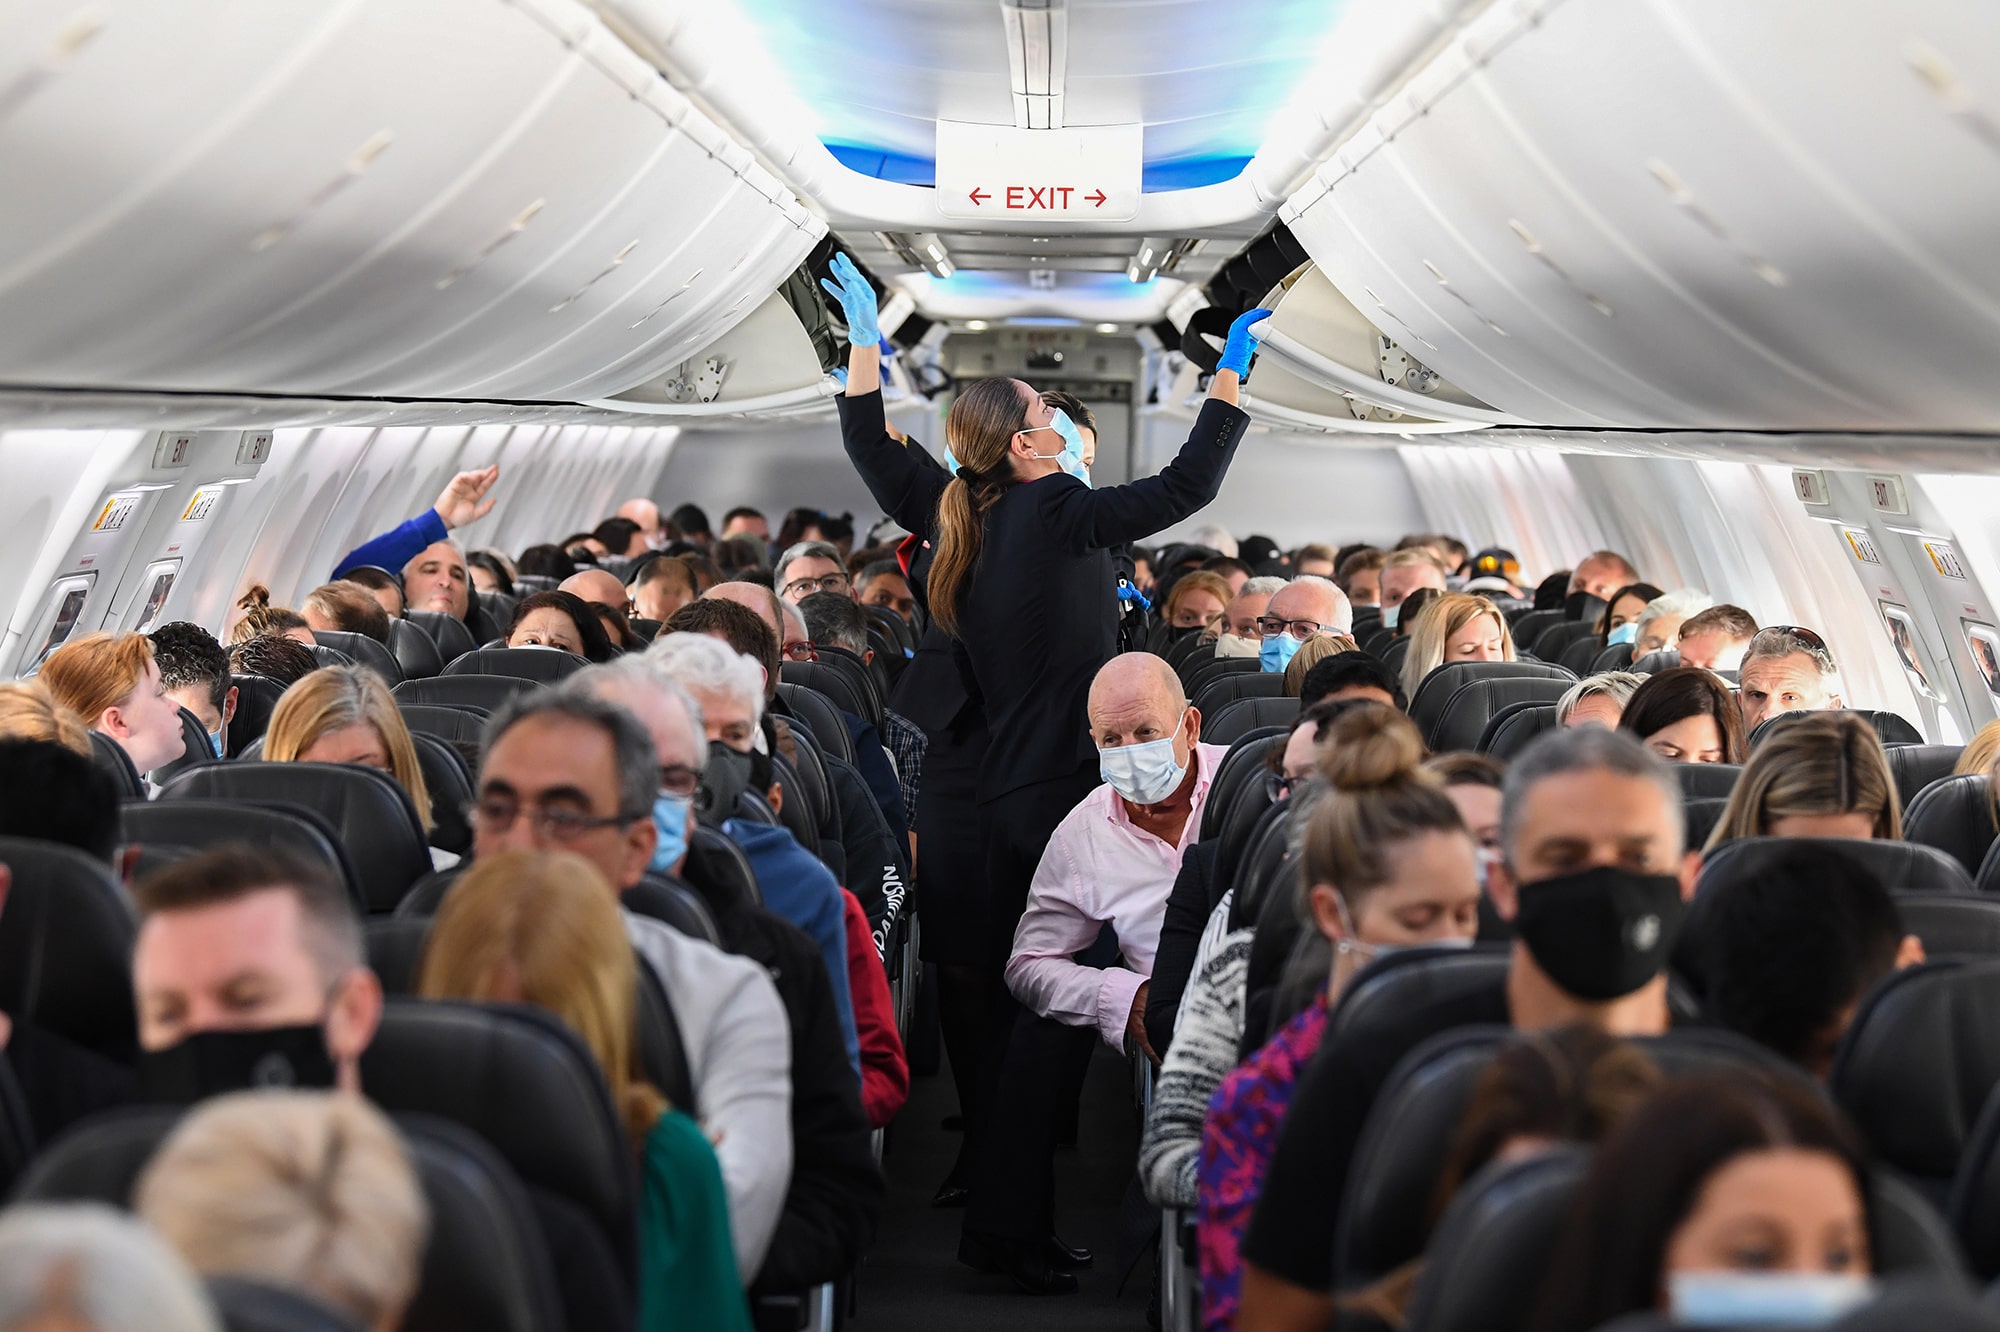 EEUU: La CDC exige el uso de mascarillas en aviones y transporte público